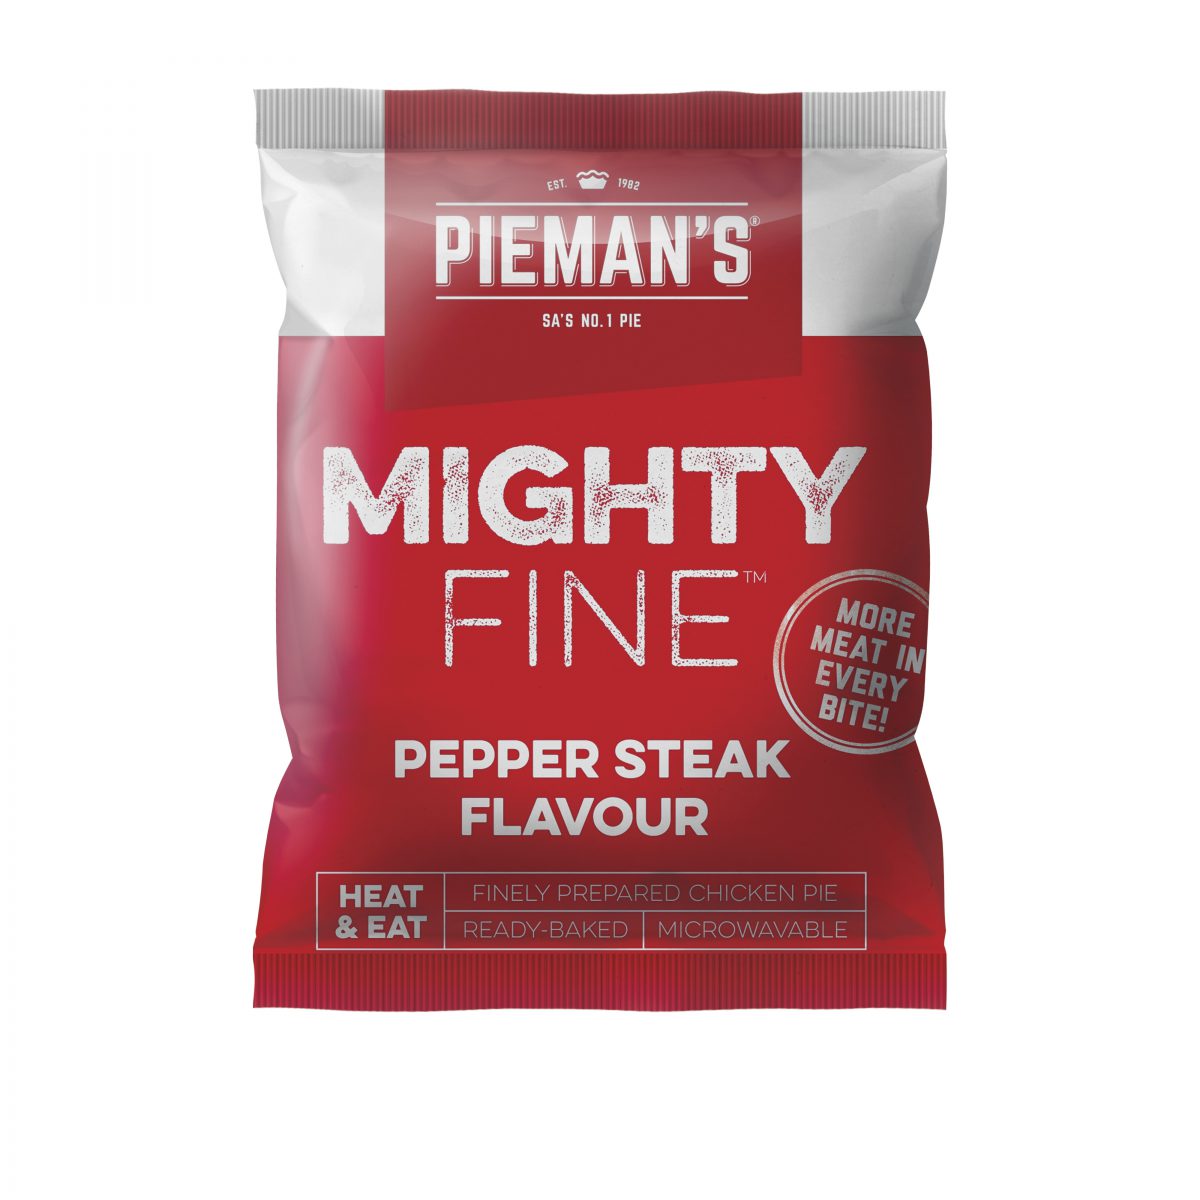 Pieman’s Mighty Fine pepper steak